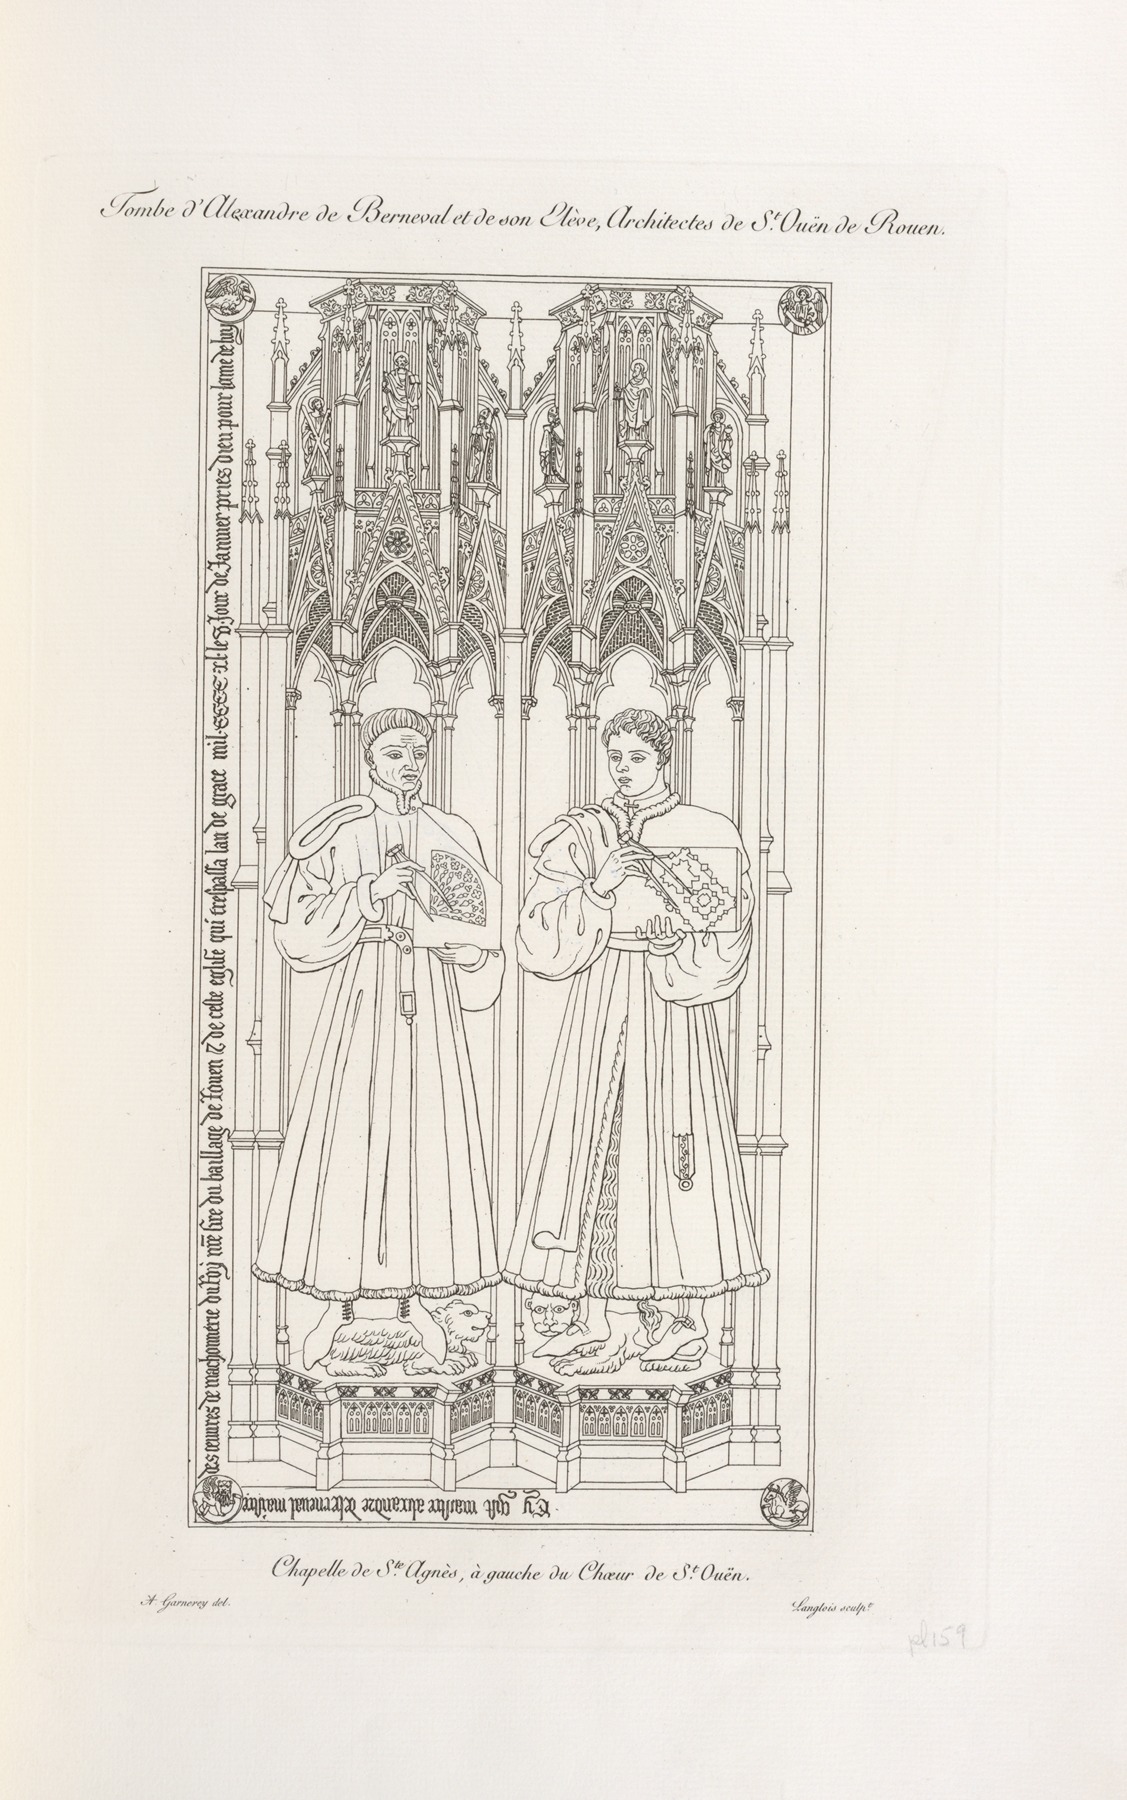 Nicolas Xavier Willemin - Tombe d’Alexandre de Berneval et de son élève, architectes de St. Ouën de Rouen. Chapelle de Ste. Agnès, à gauche du chœur de St. Ouën.